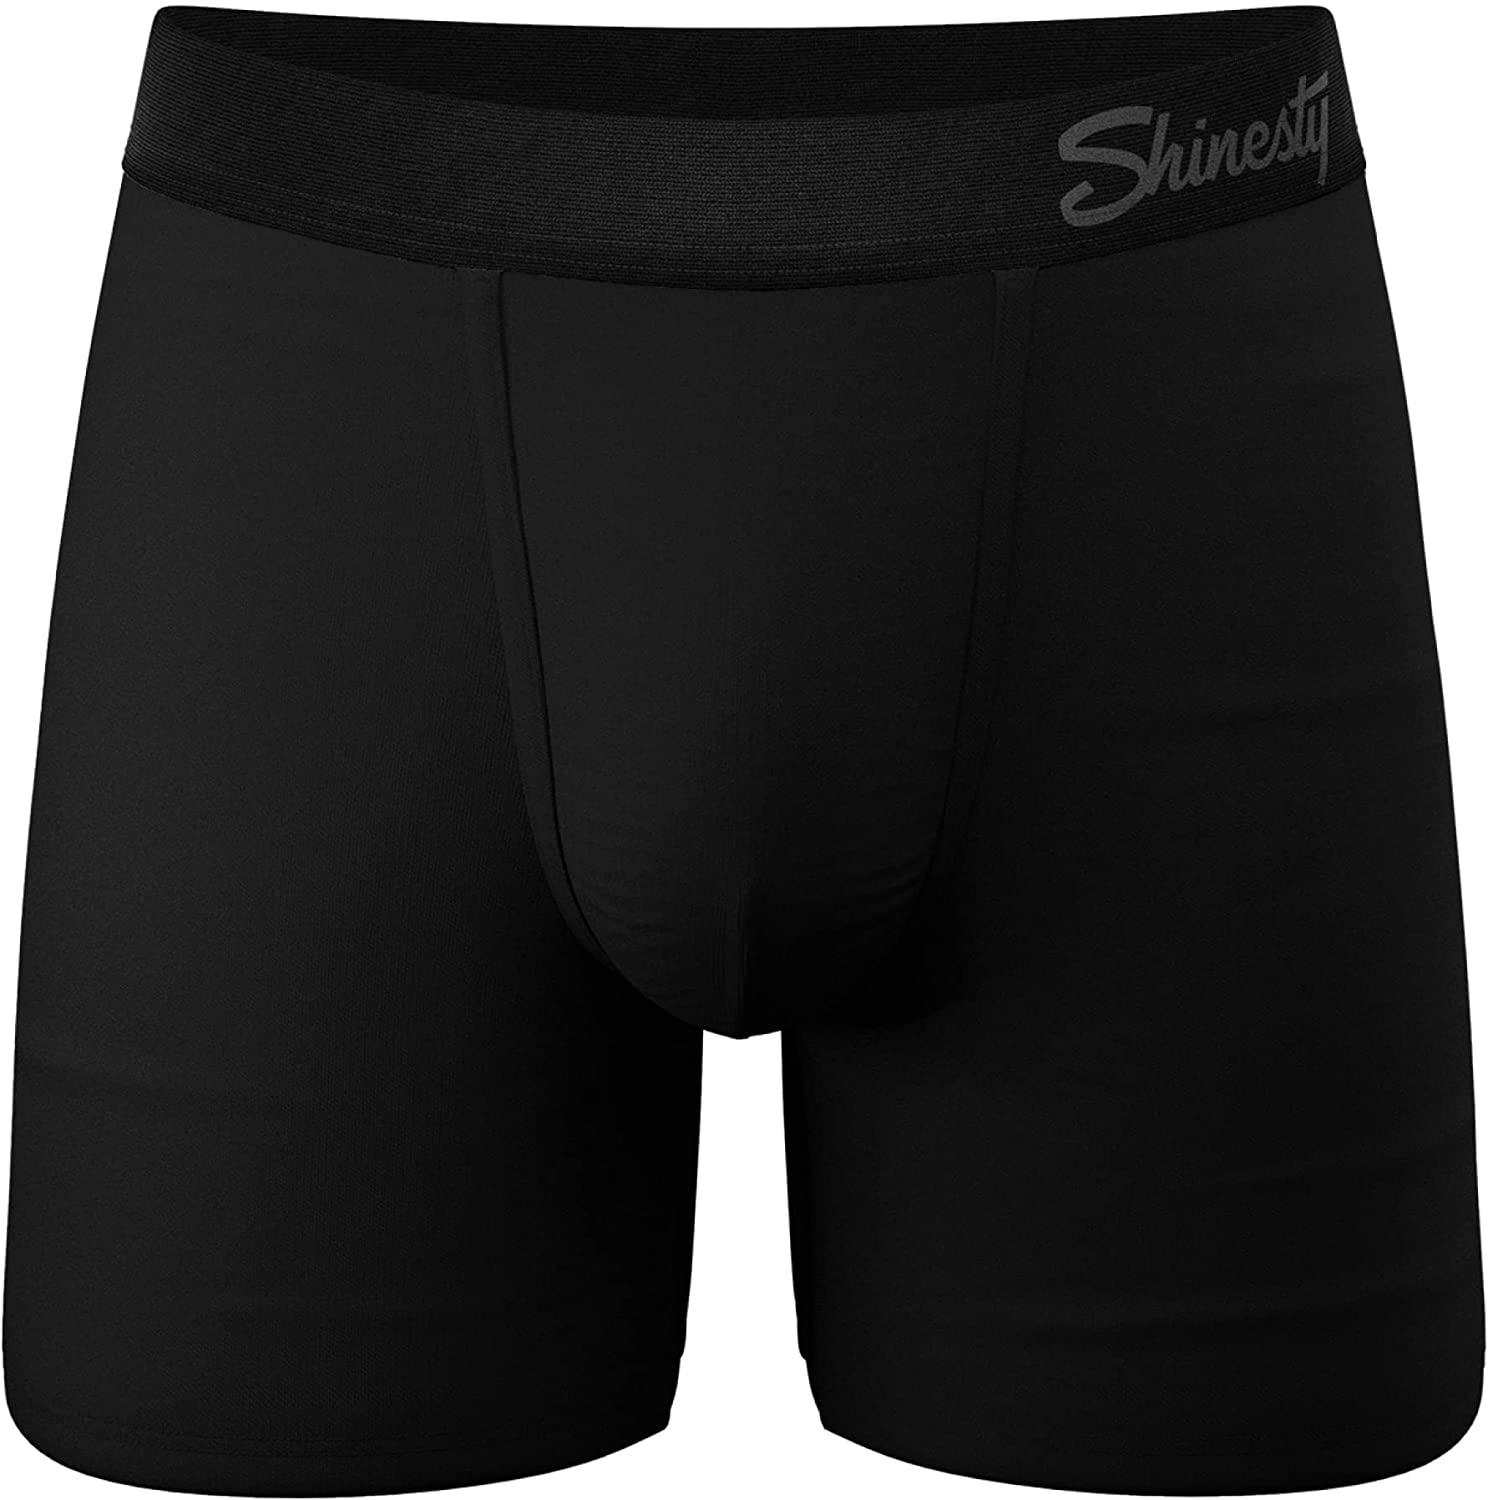  Shinesty Hammock Support Underwear Big Mens Underwear